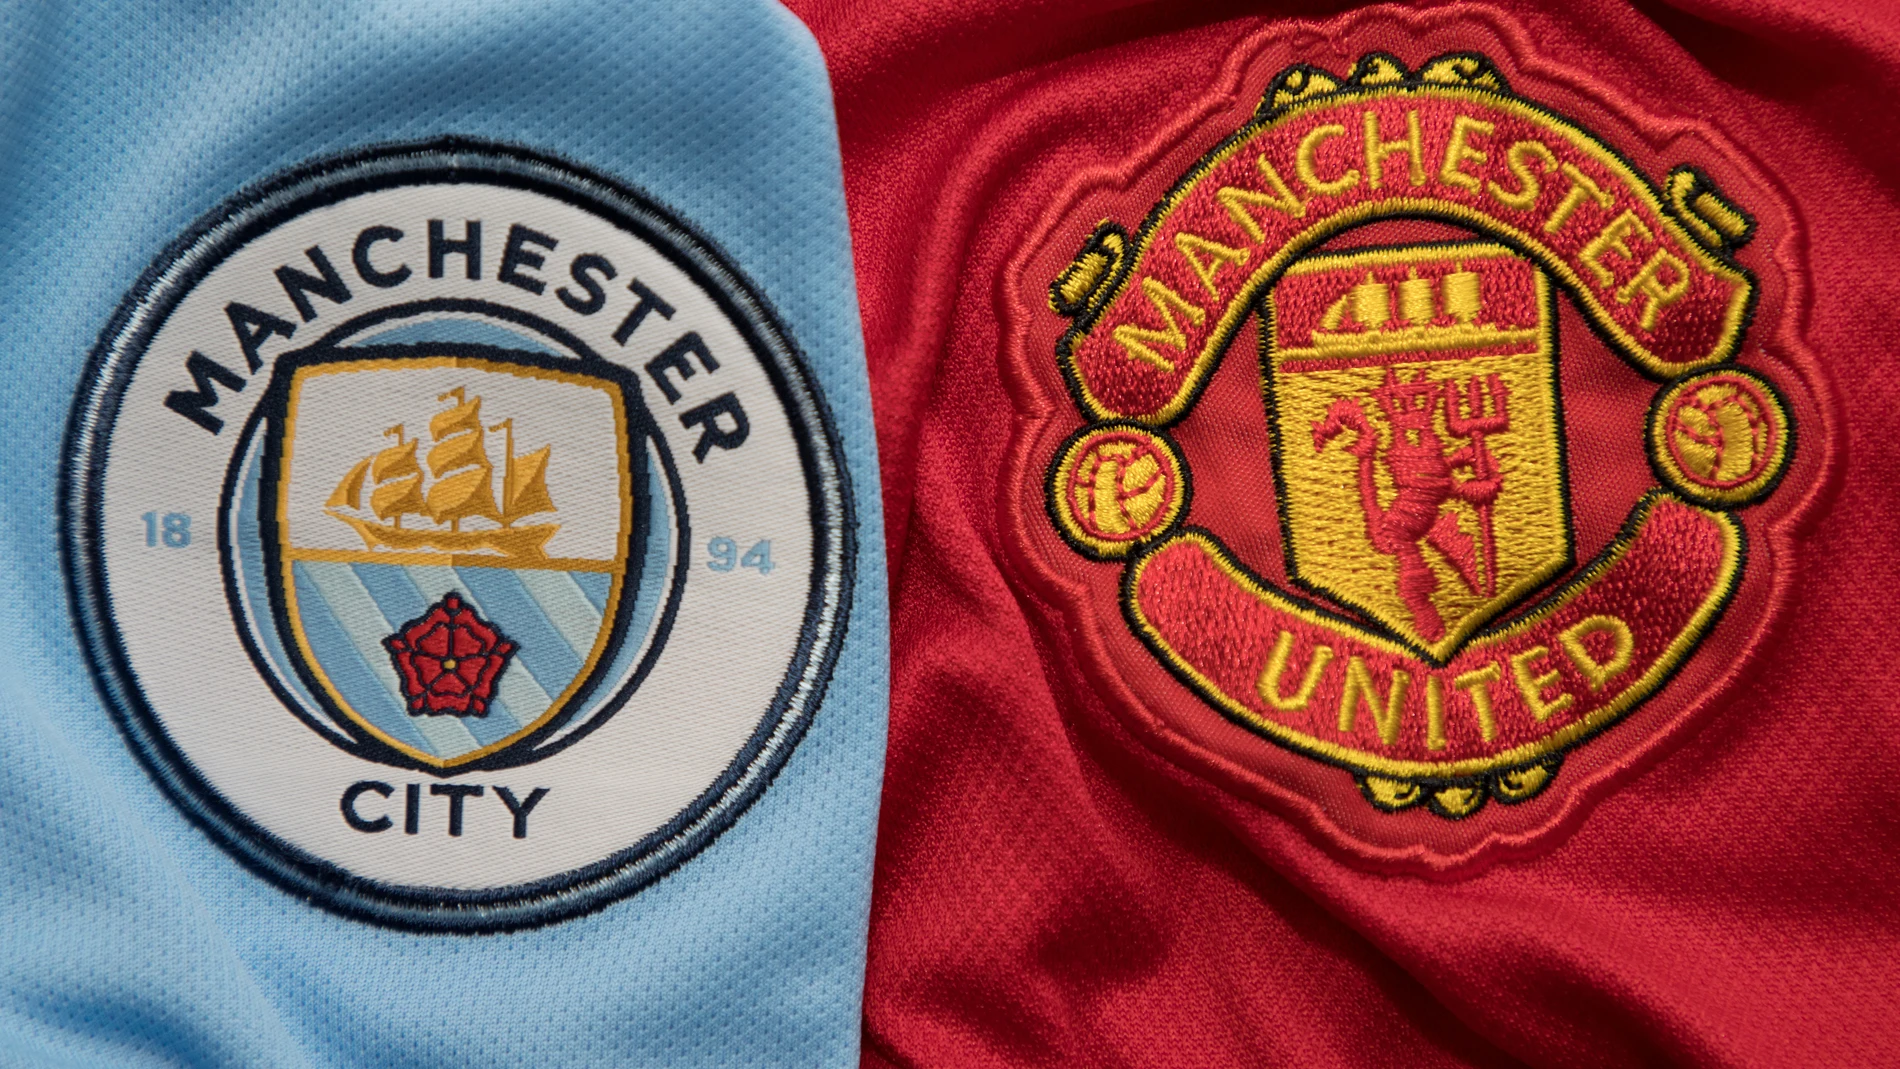 El oscuro significado de los escudos del Manchester City y United: por qué ha abierto una investigación